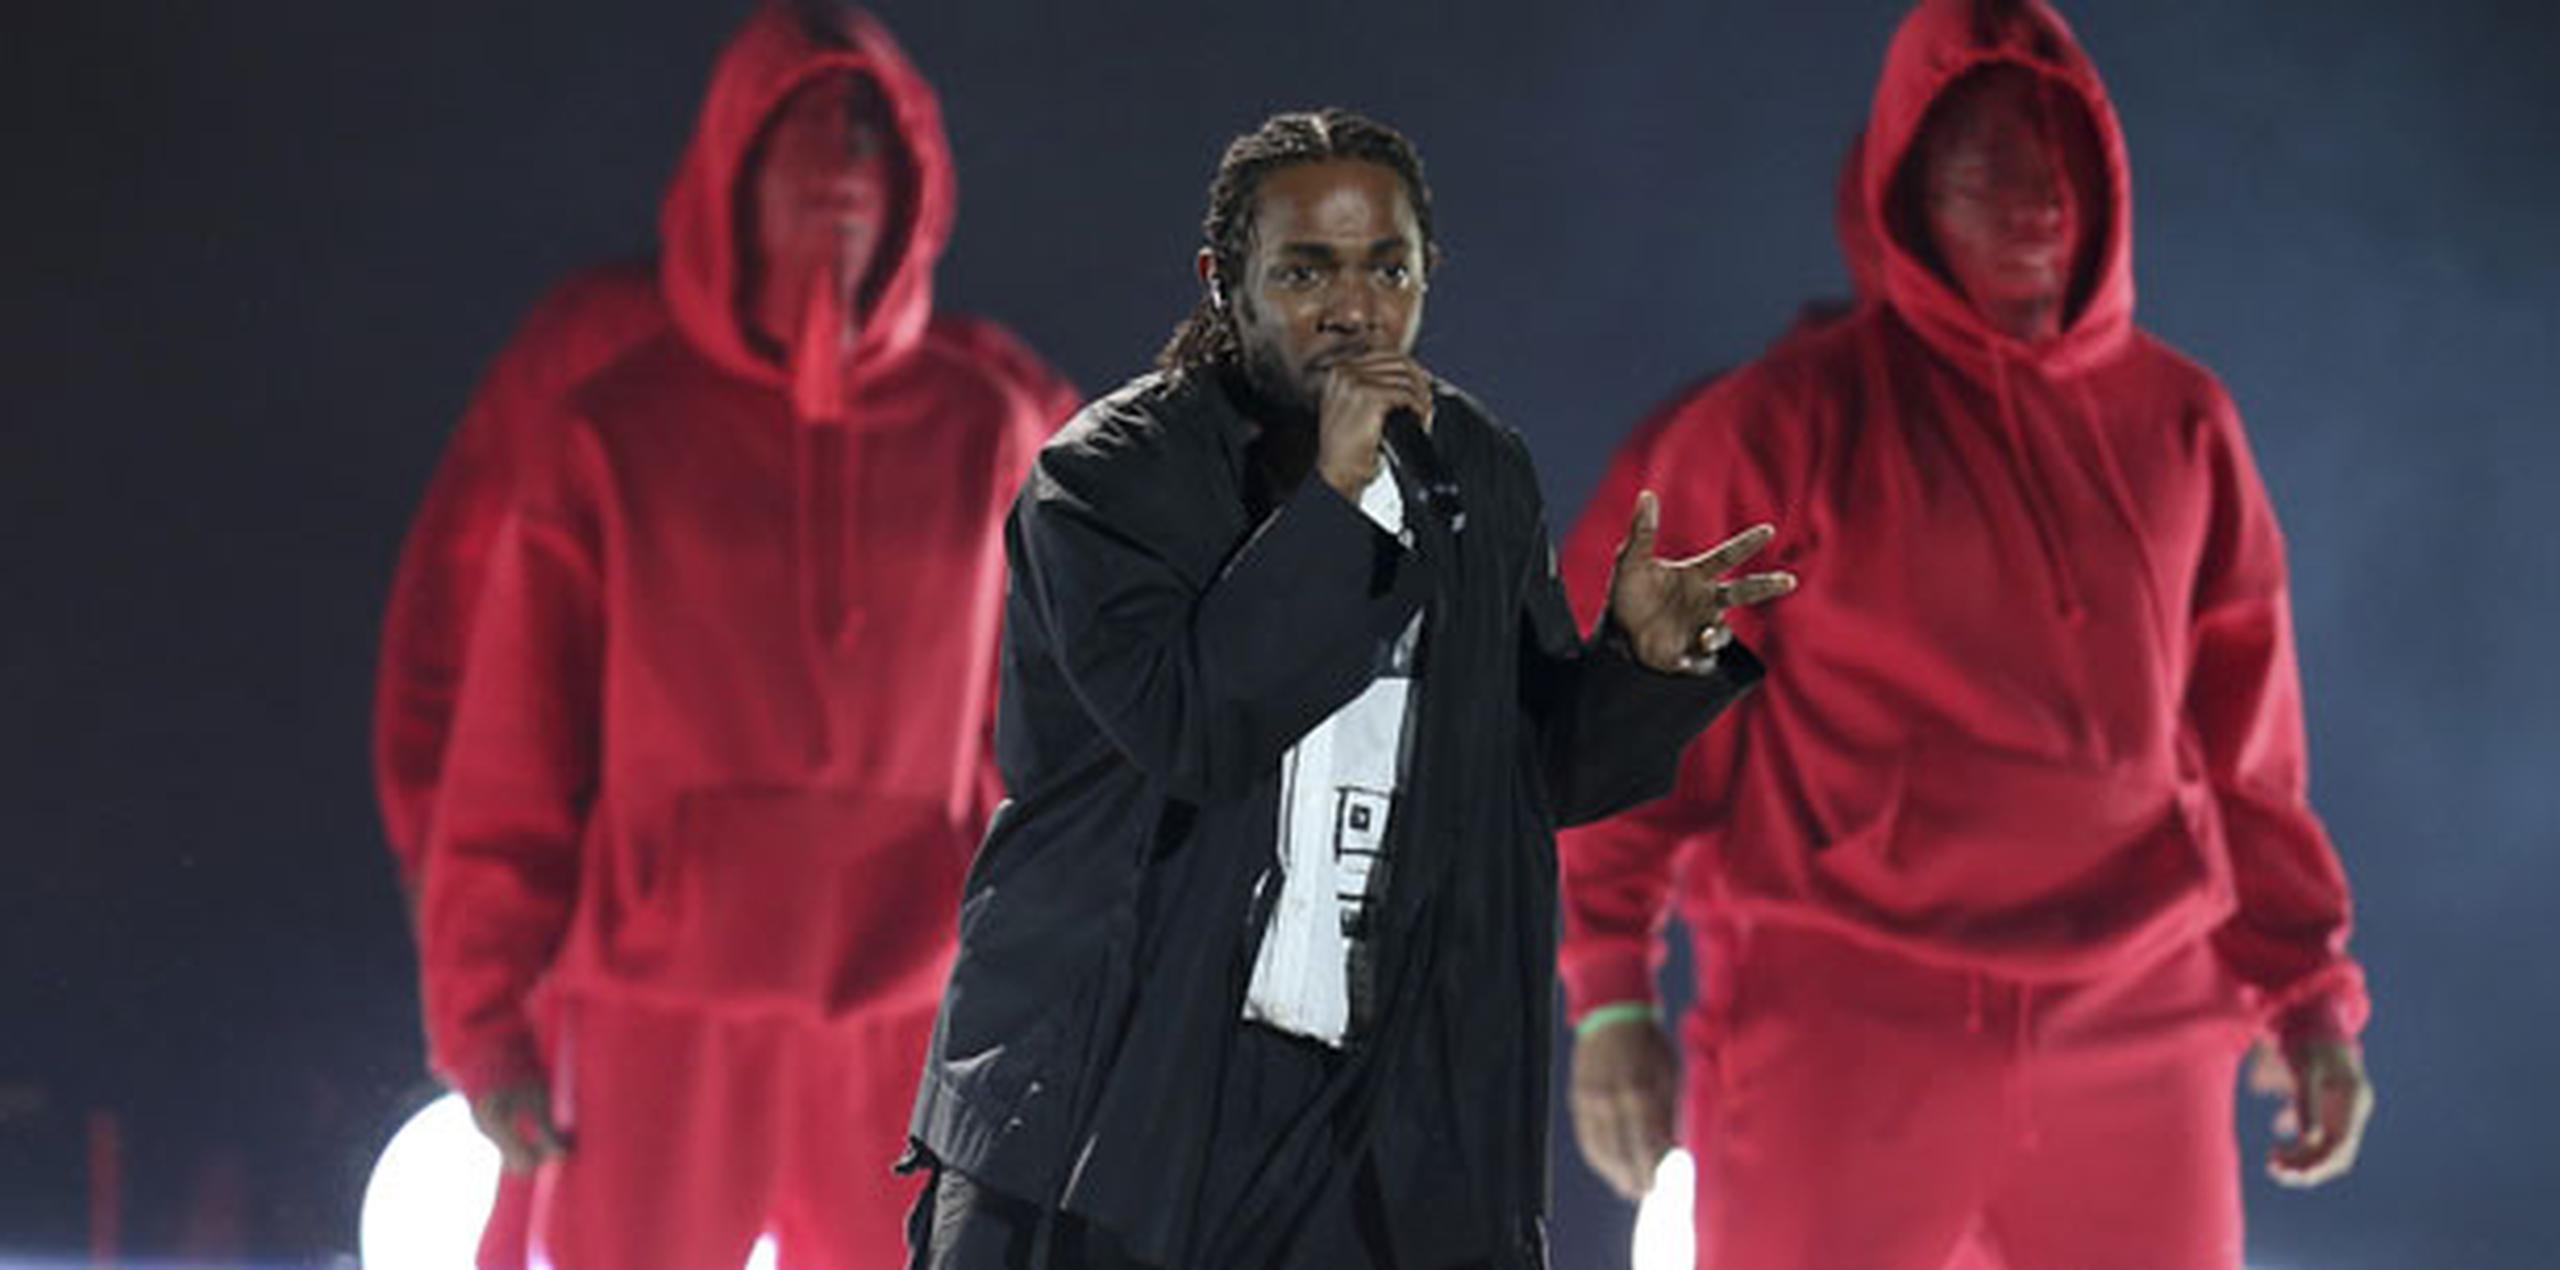 El rapero Kendrick Lamar inauguró la ceremonia con un popurrí que incluyó a un grupo de bailarines fingiendo ser baleados. (AP)